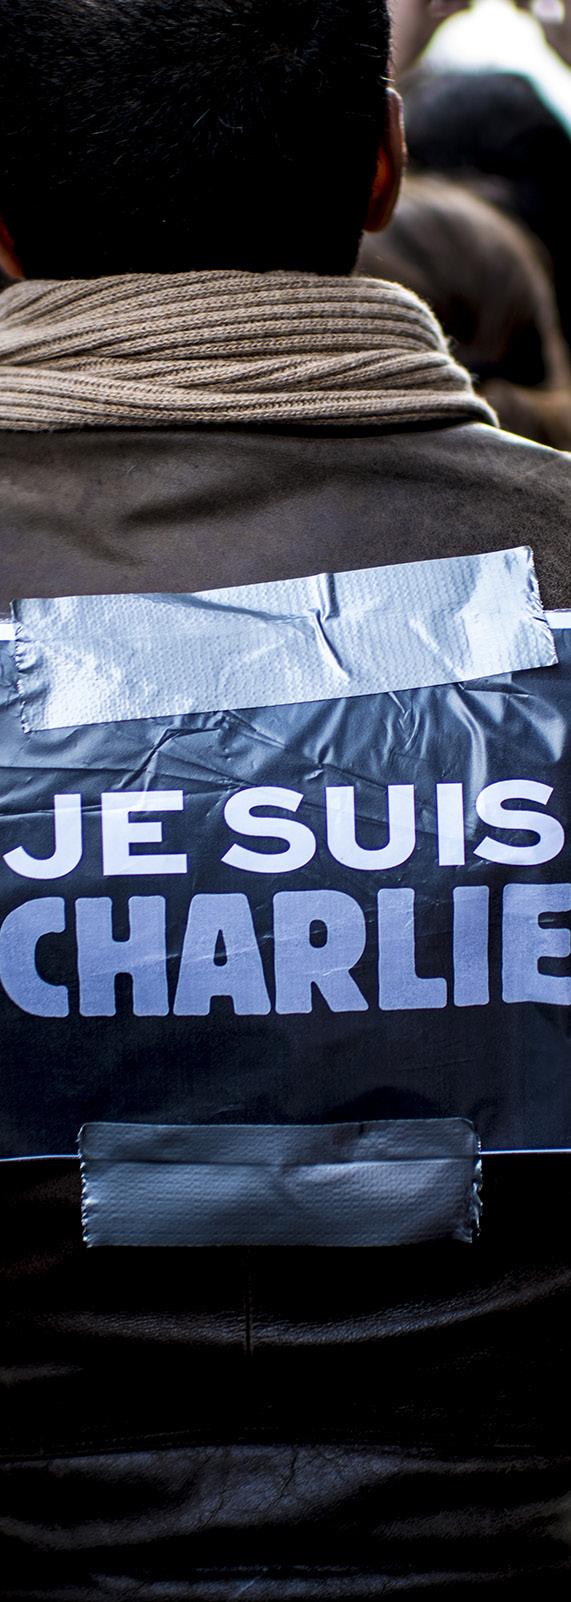 7 januari 2015, Charlie Hebdo, Parijs Twee mannen dringen het gebouw in Parijs binnen waar de redactie 24 van mei het 2014, Franse Joods satirische museum, tijdschrift Brussel Charlie Hebdo is